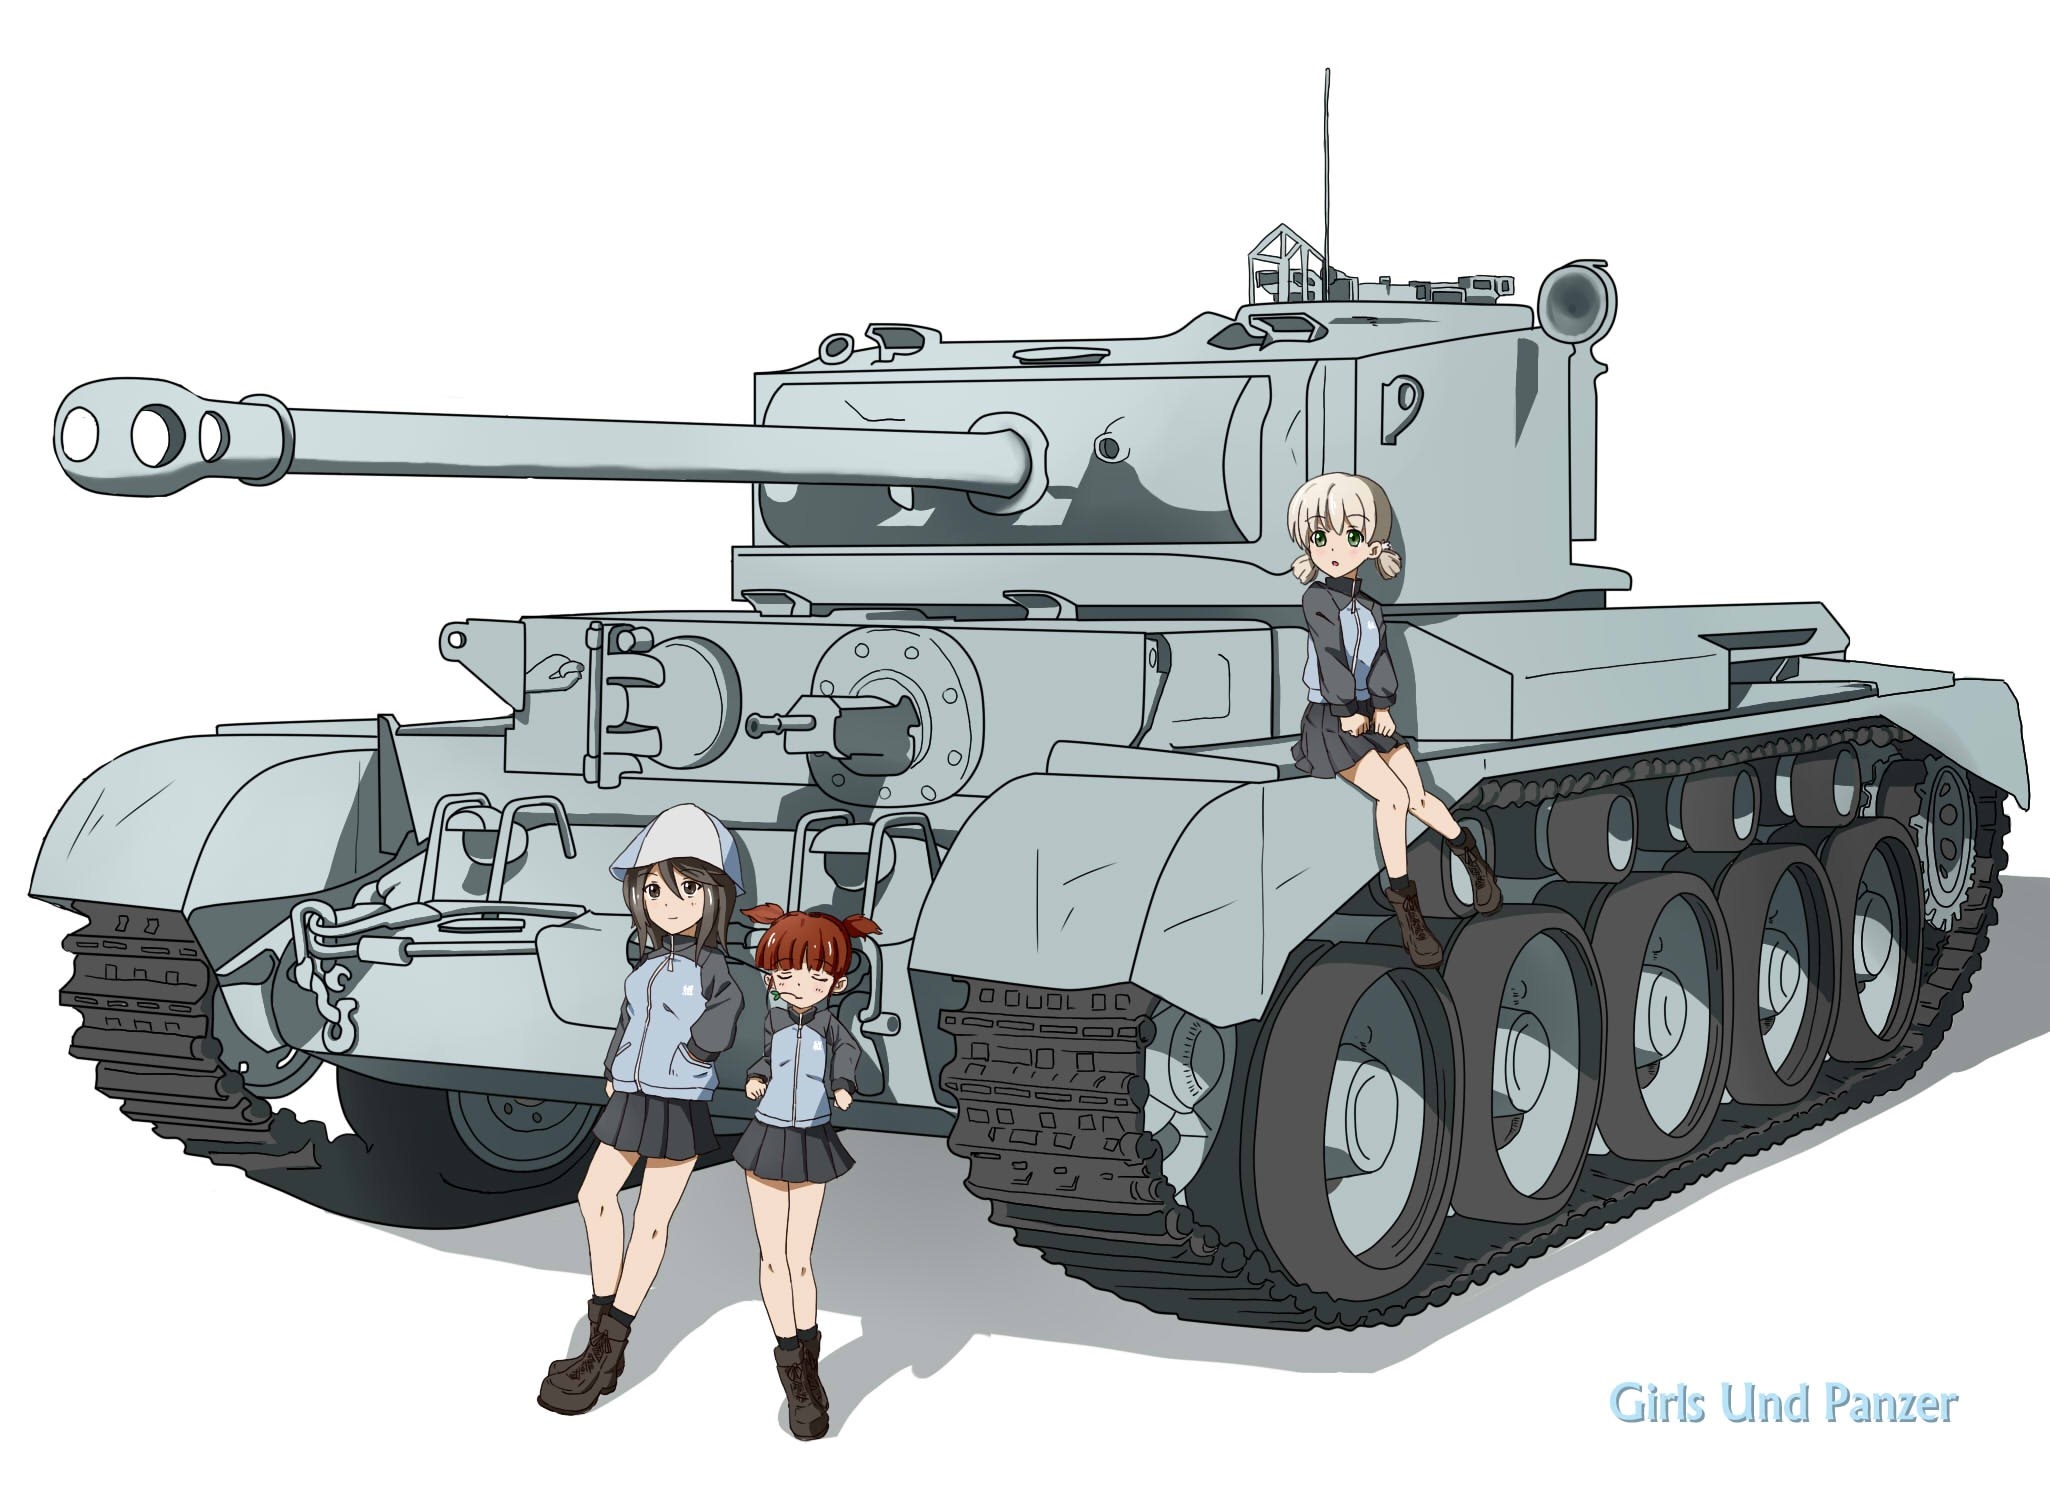 Girls und Panzer Ягдтигр